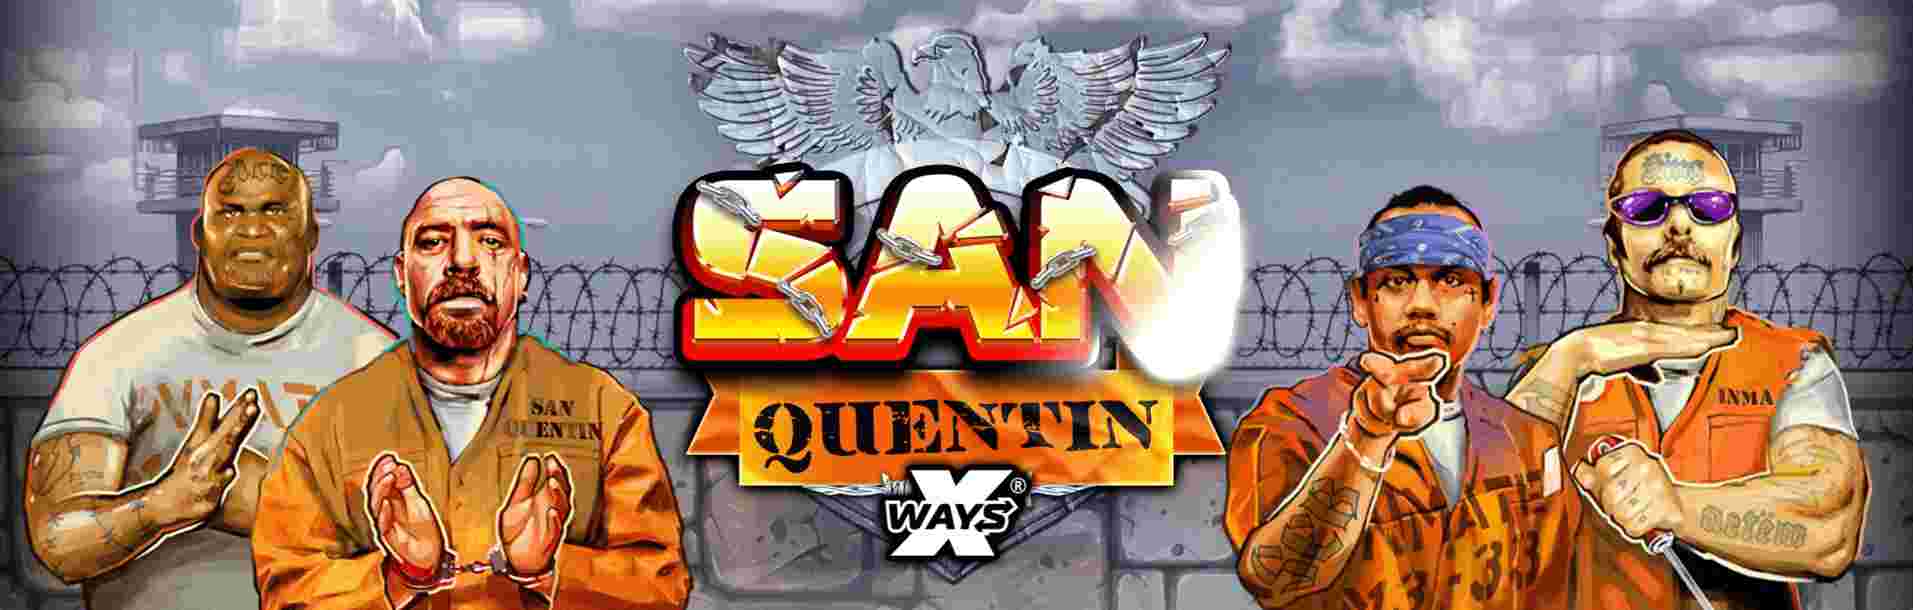 SanQuentin Xways GameSlot Online - Menyelusuri Bui Legendaris dengan San Quentin Xways: Permainan Slot Online yang Mengasyikkan.